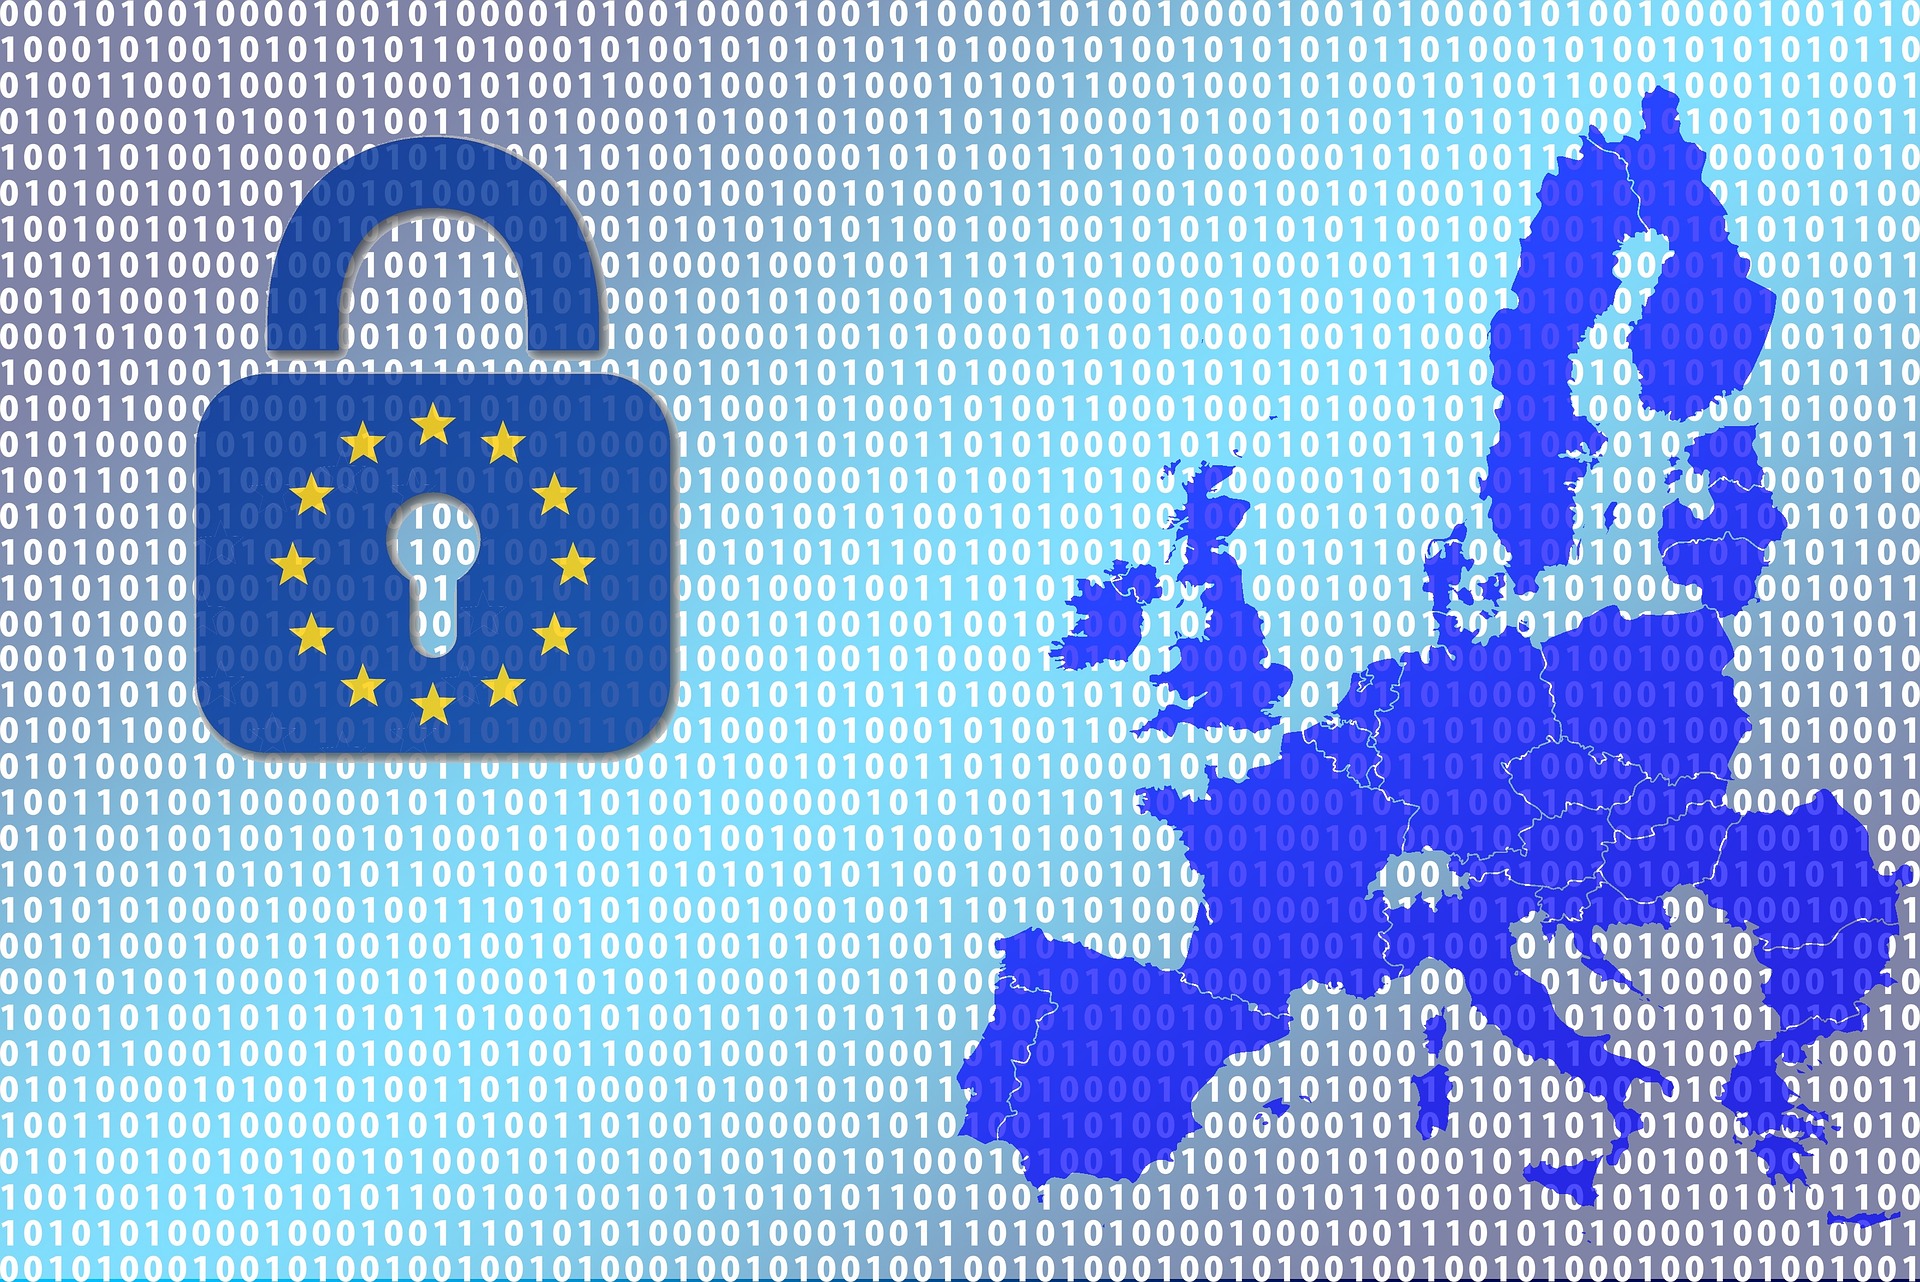 EU-Datenschutzaufsicht findet Microsoft-Verträge bedenklich